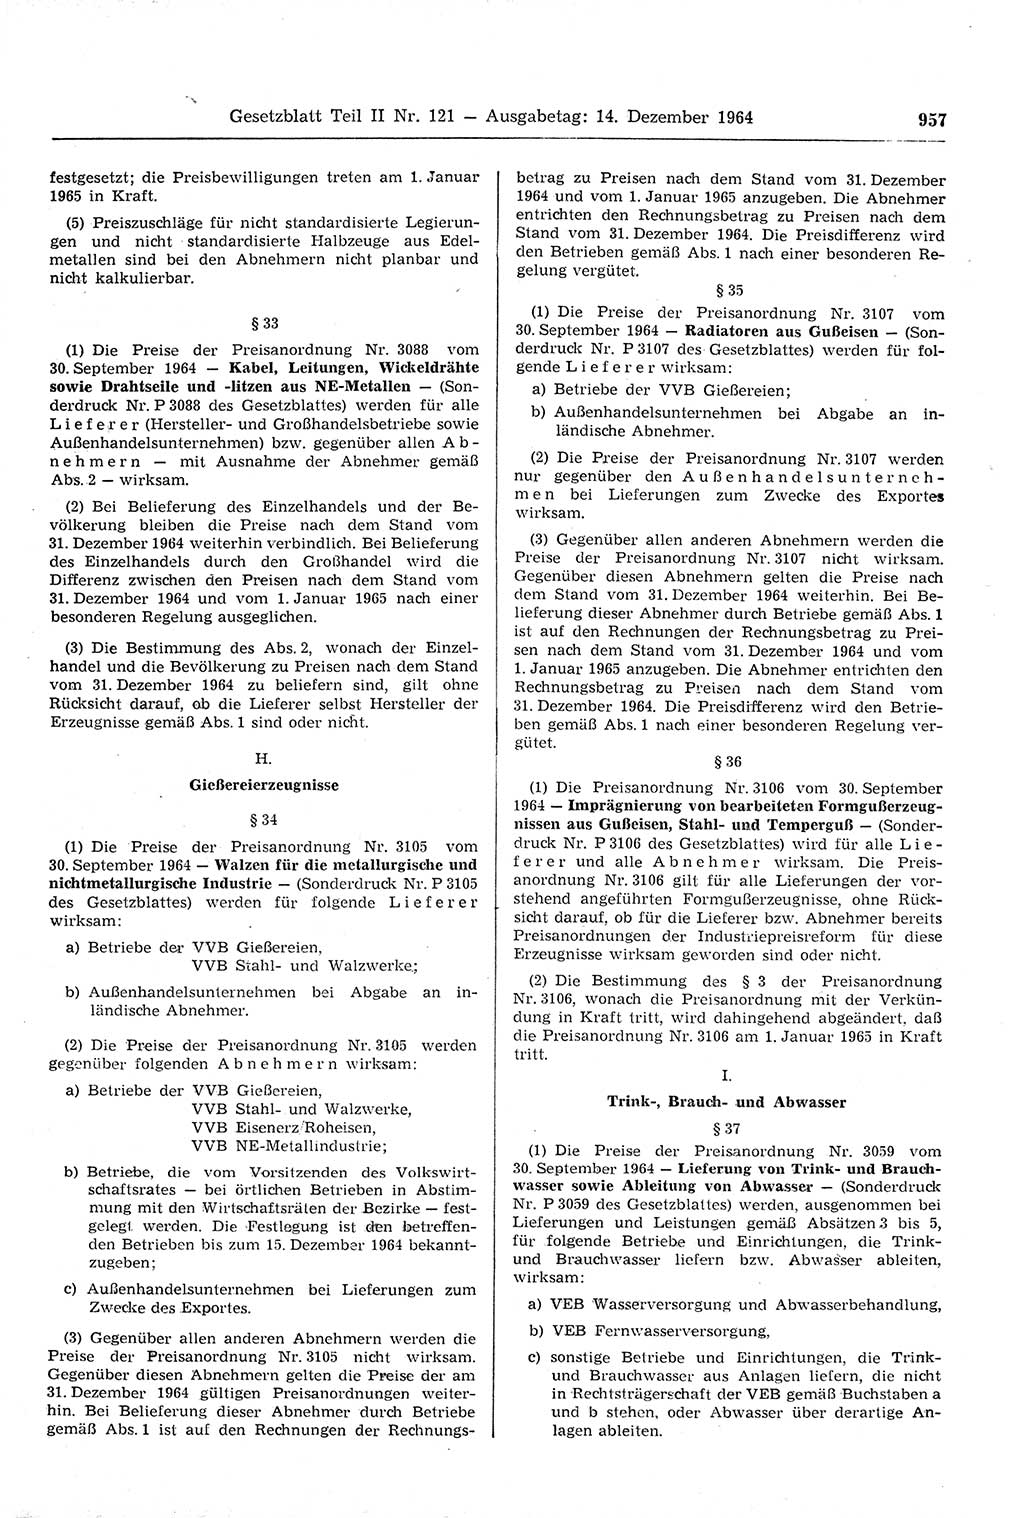 Gesetzblatt (GBl.) der Deutschen Demokratischen Republik (DDR) Teil ⅠⅠ 1964, Seite 957 (GBl. DDR ⅠⅠ 1964, S. 957)